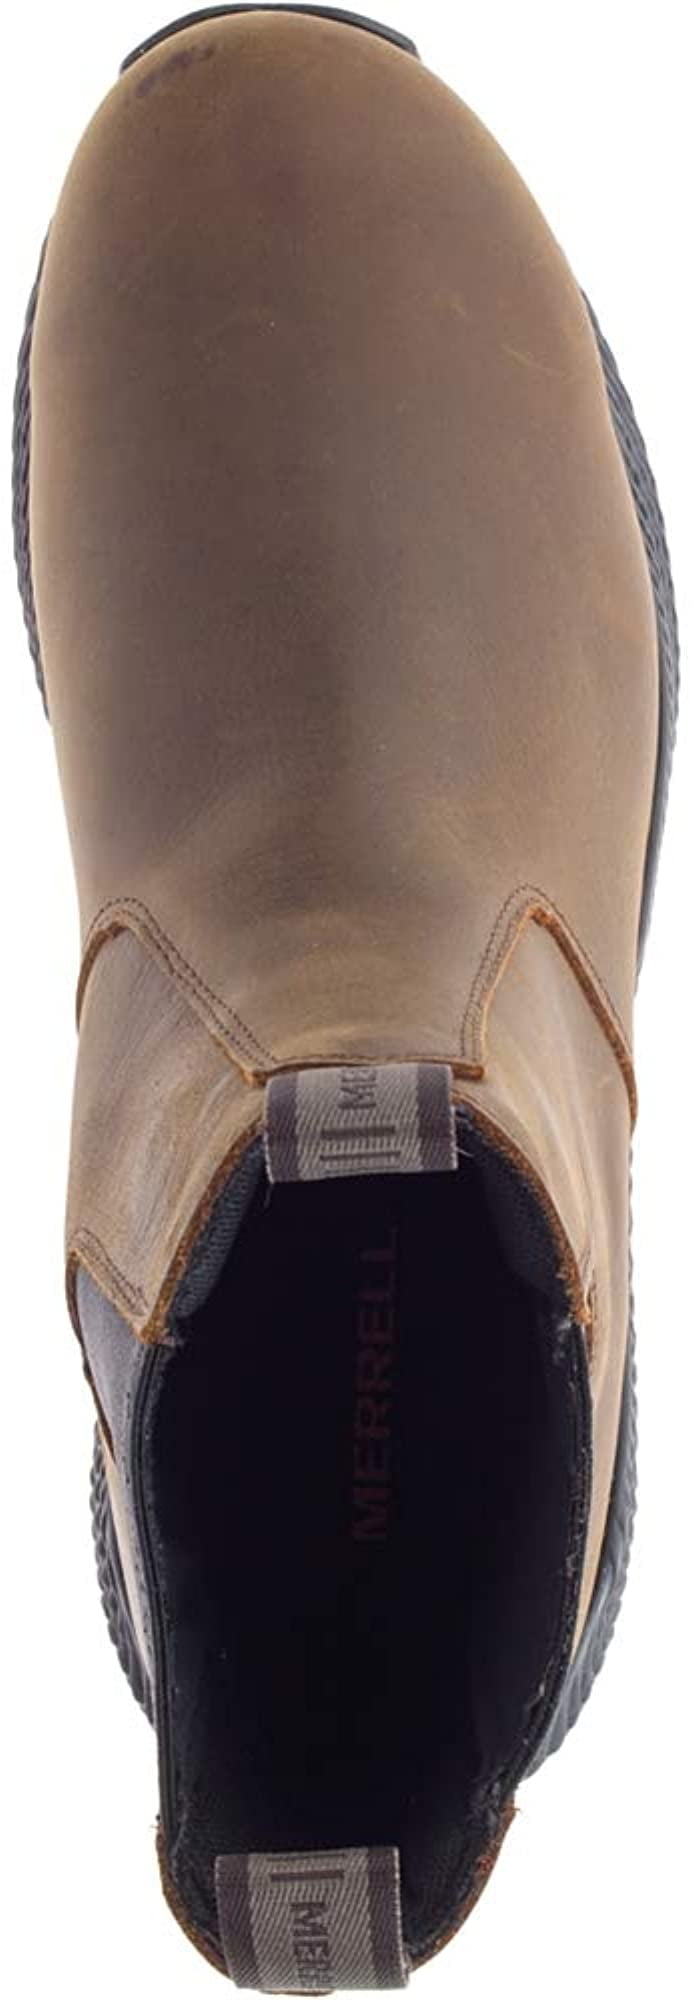 merrell men's forestbound chelsea waterproof boot